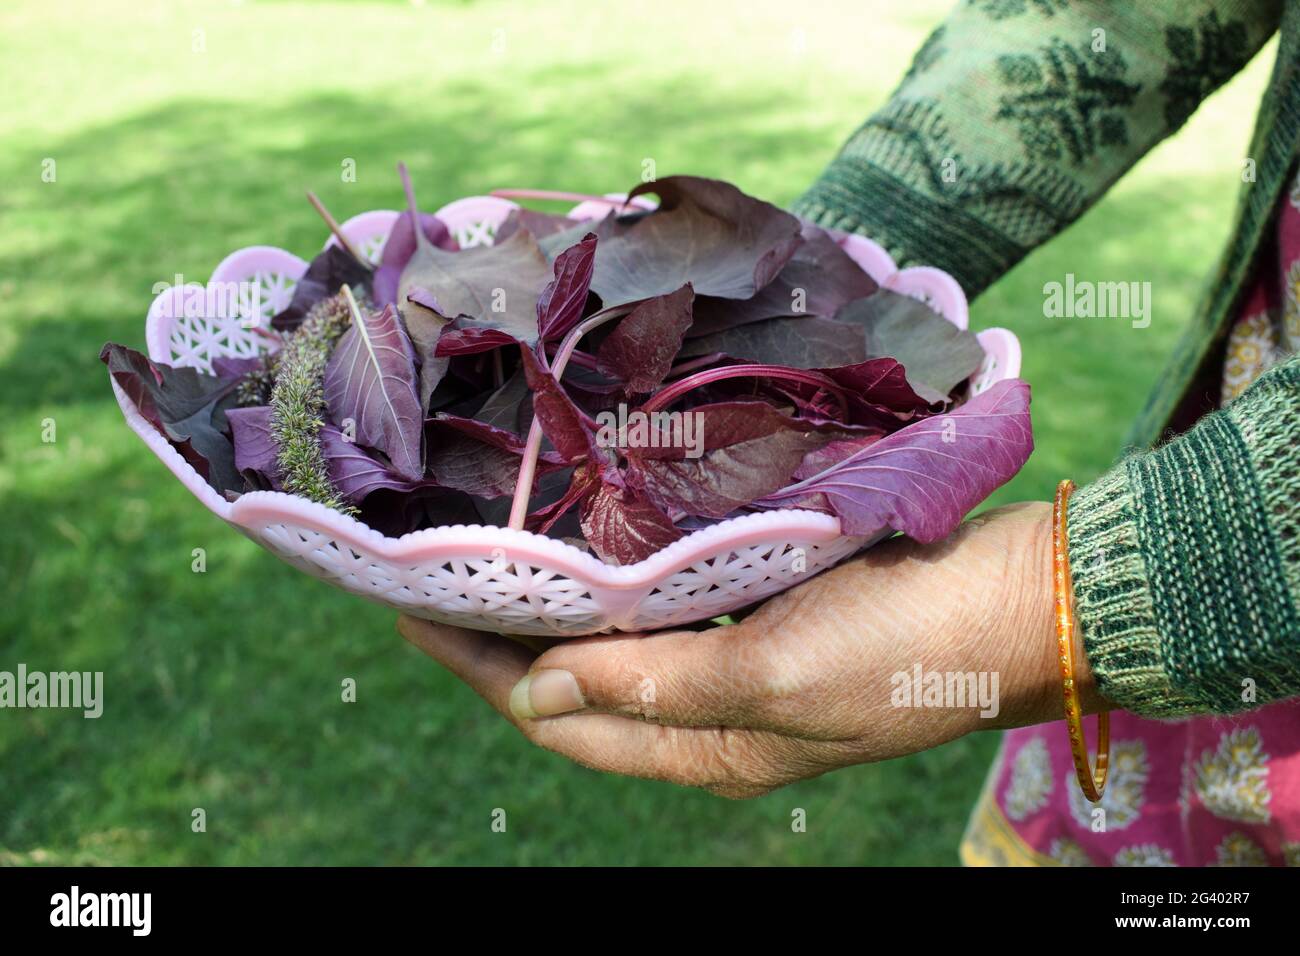 Panier de conservation pour femme rempli de légumes à feuilles d'épinards rouges biologiques. Cueilli à la main cultivé en Inde Asie. Banque D'Images